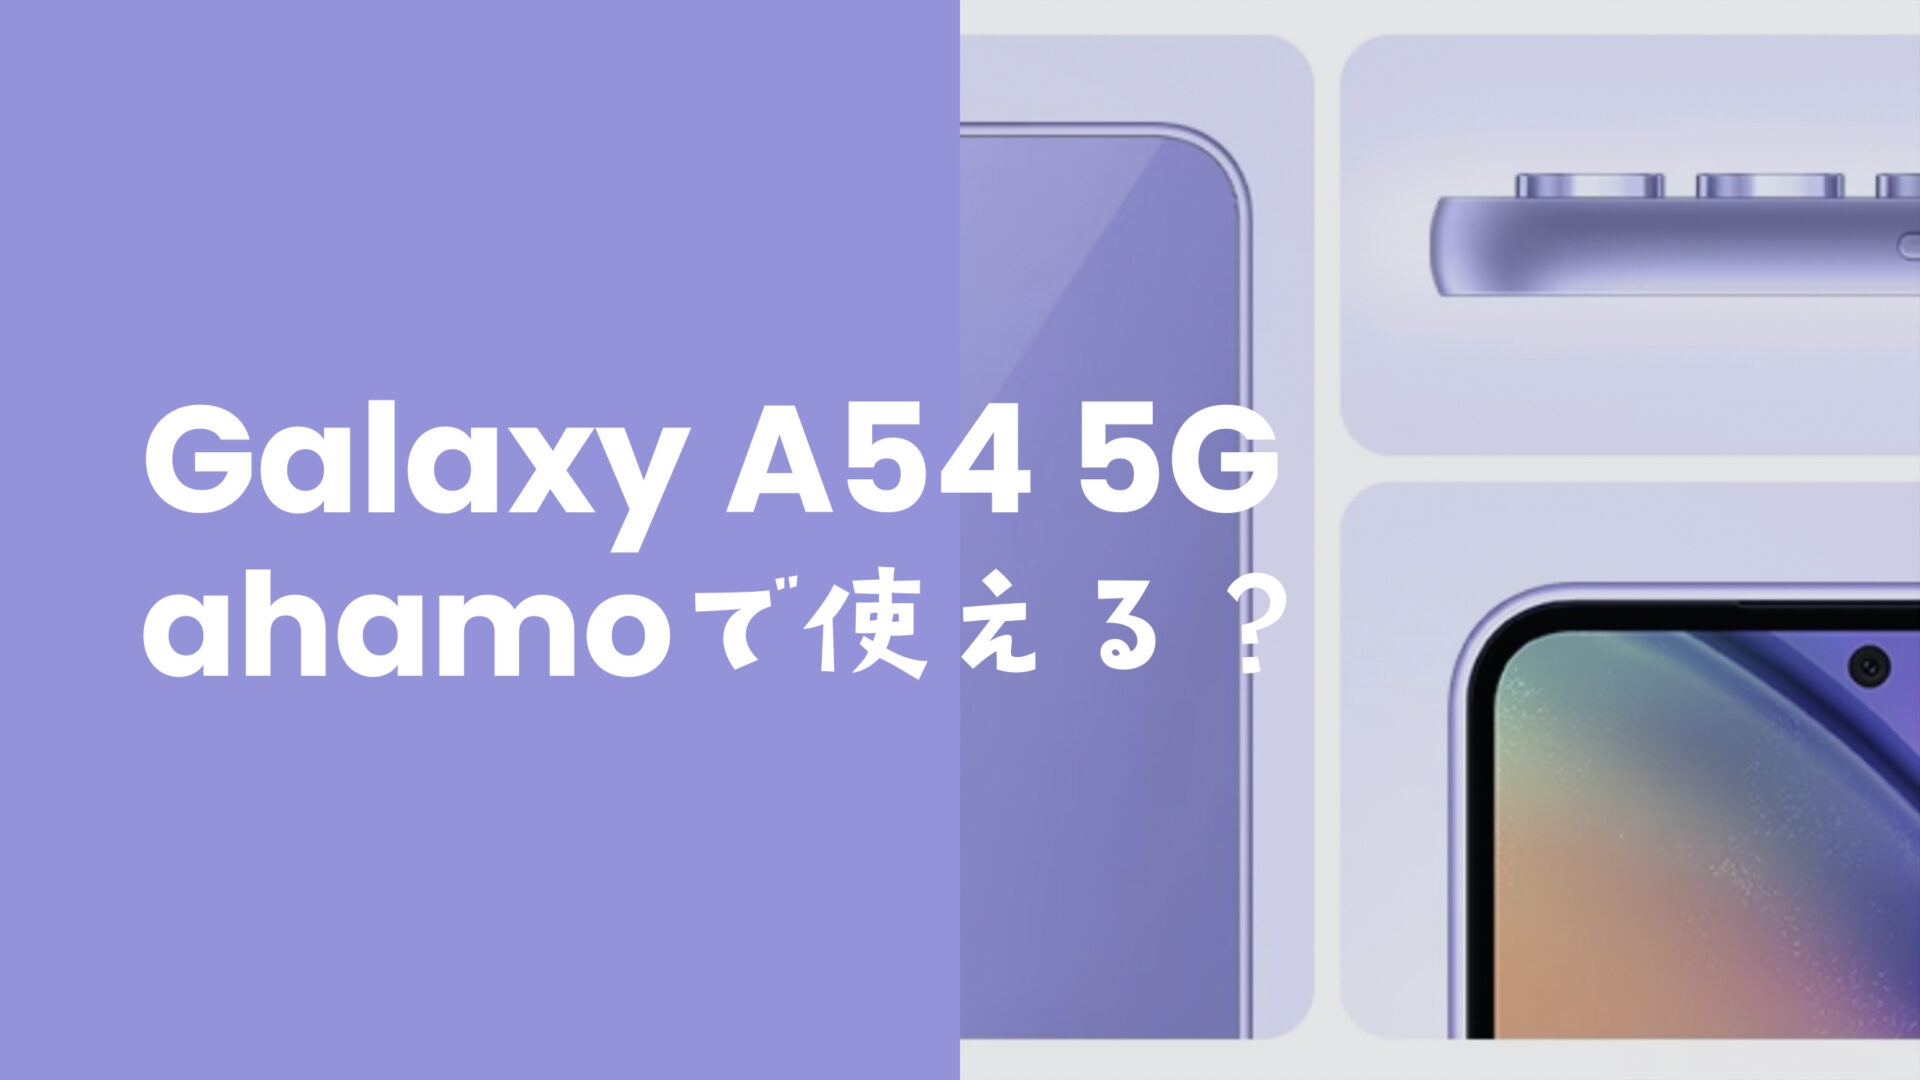 ahamo(アハモ)でGalaxy A54 5Gは使える？対応機種に含まれる？のサムネイル画像